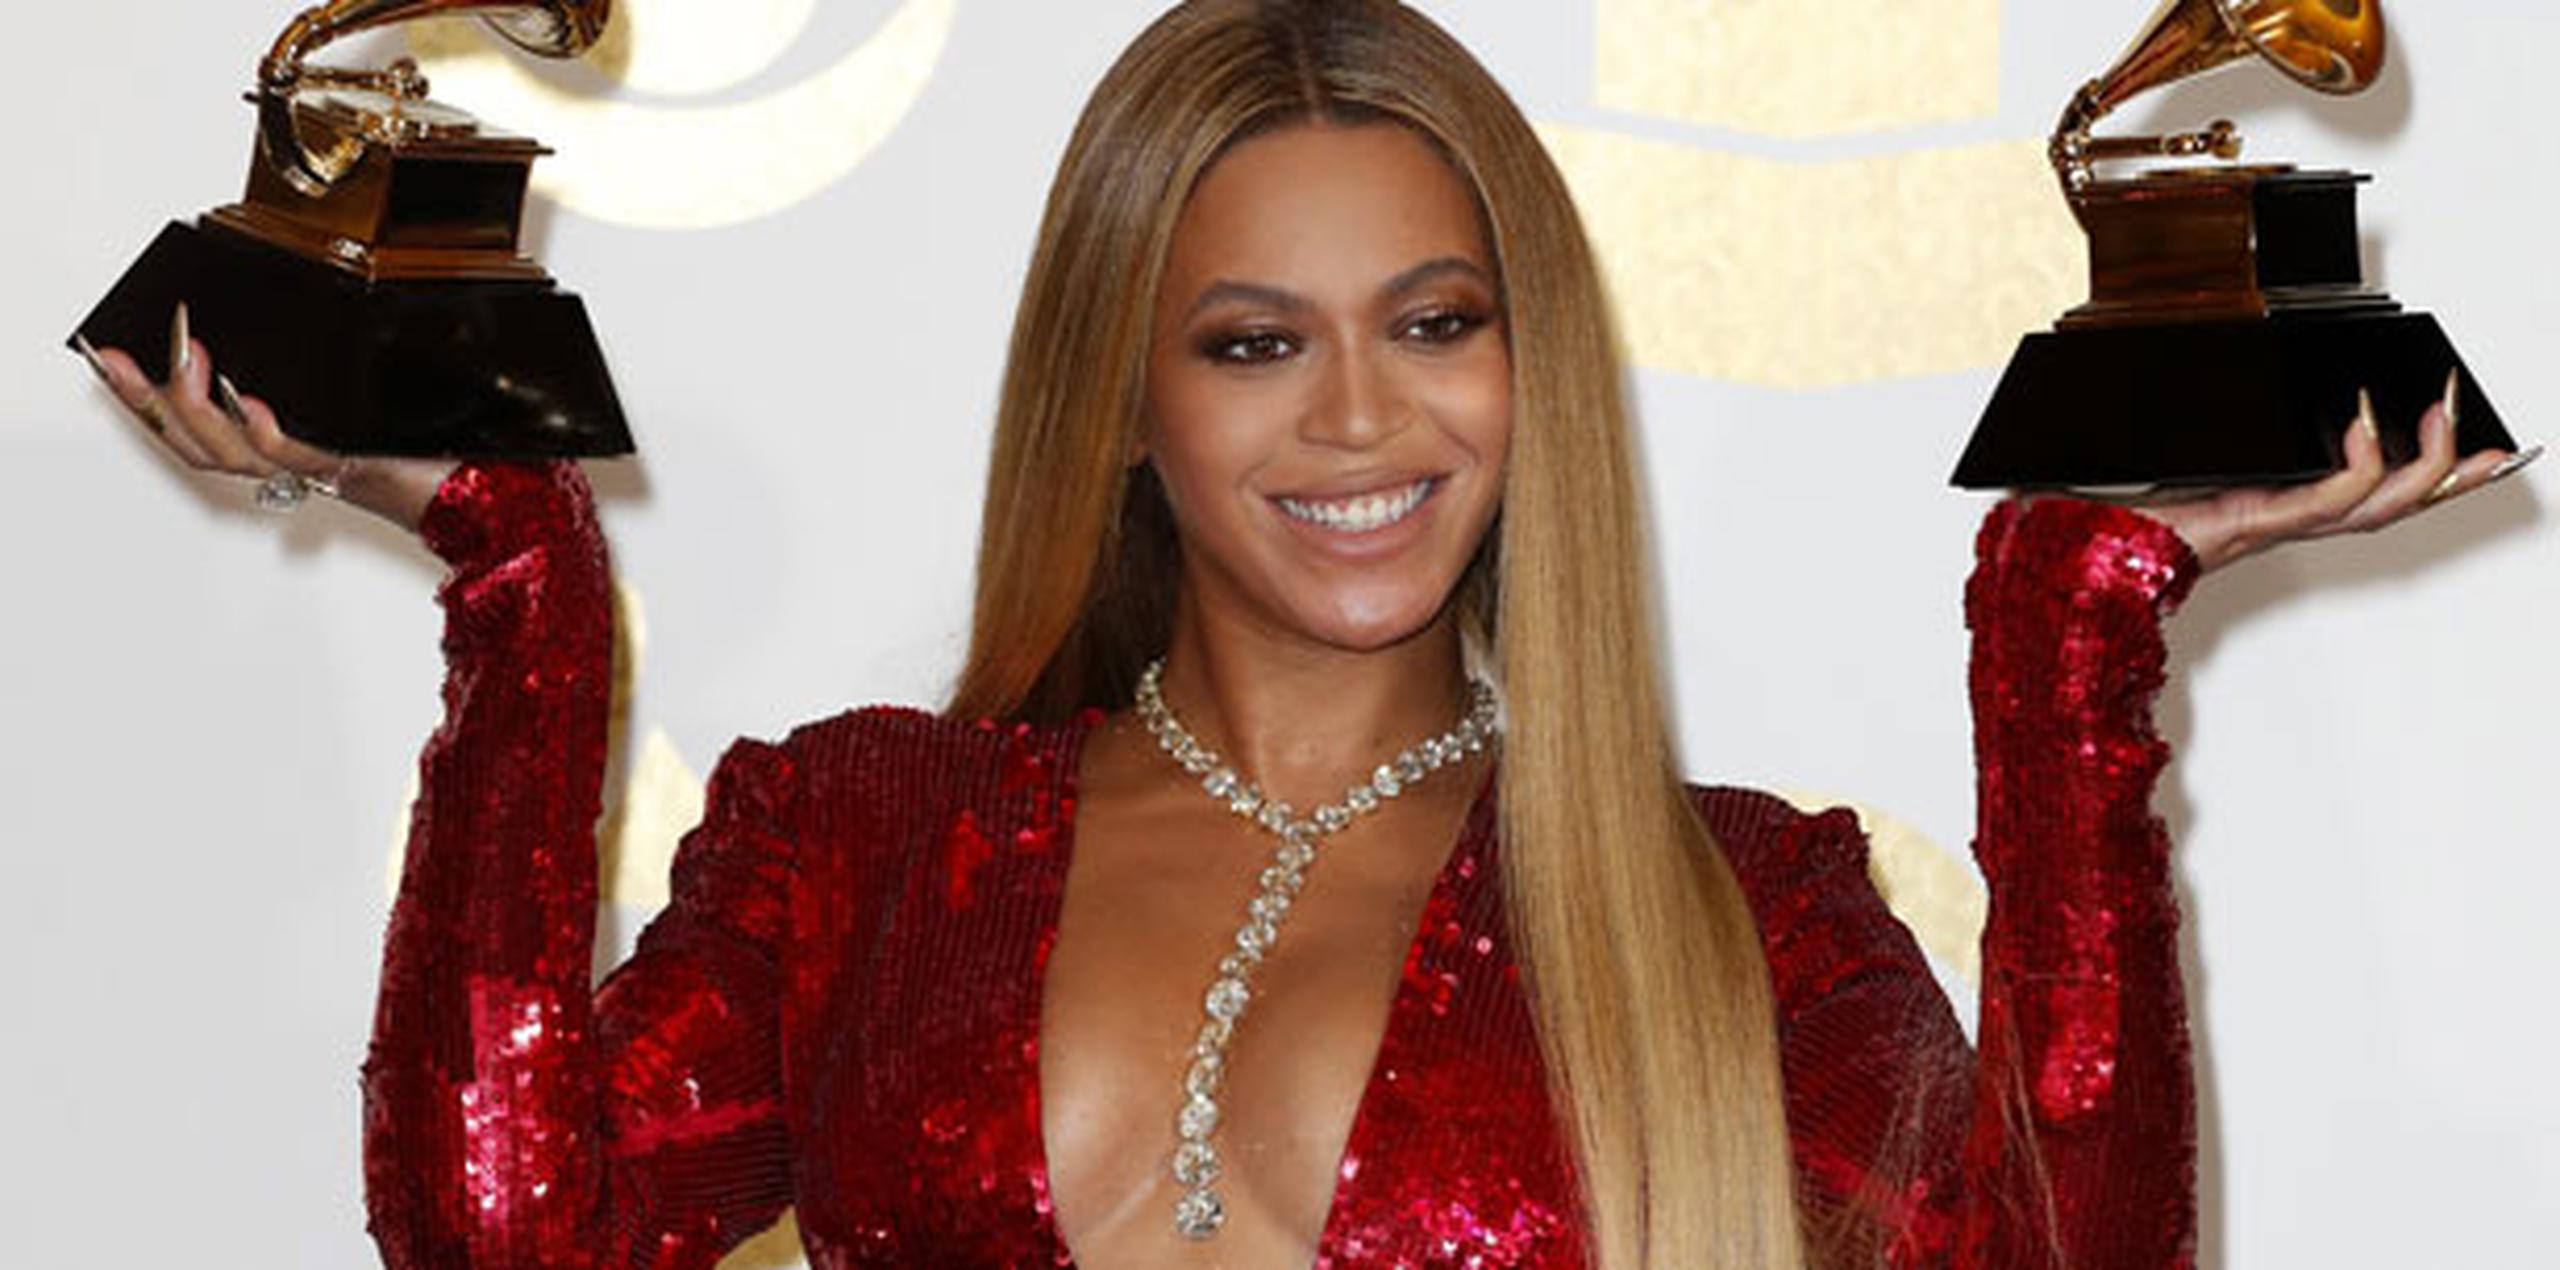 Tras la cesárea, Beyoncé señaló que necesitó tiempo para sanar y recuperarse, y que decidió aceptar sus curvas, ser "paciente" consigo misma y "disfrutar" de su cuerpo. (EFE)